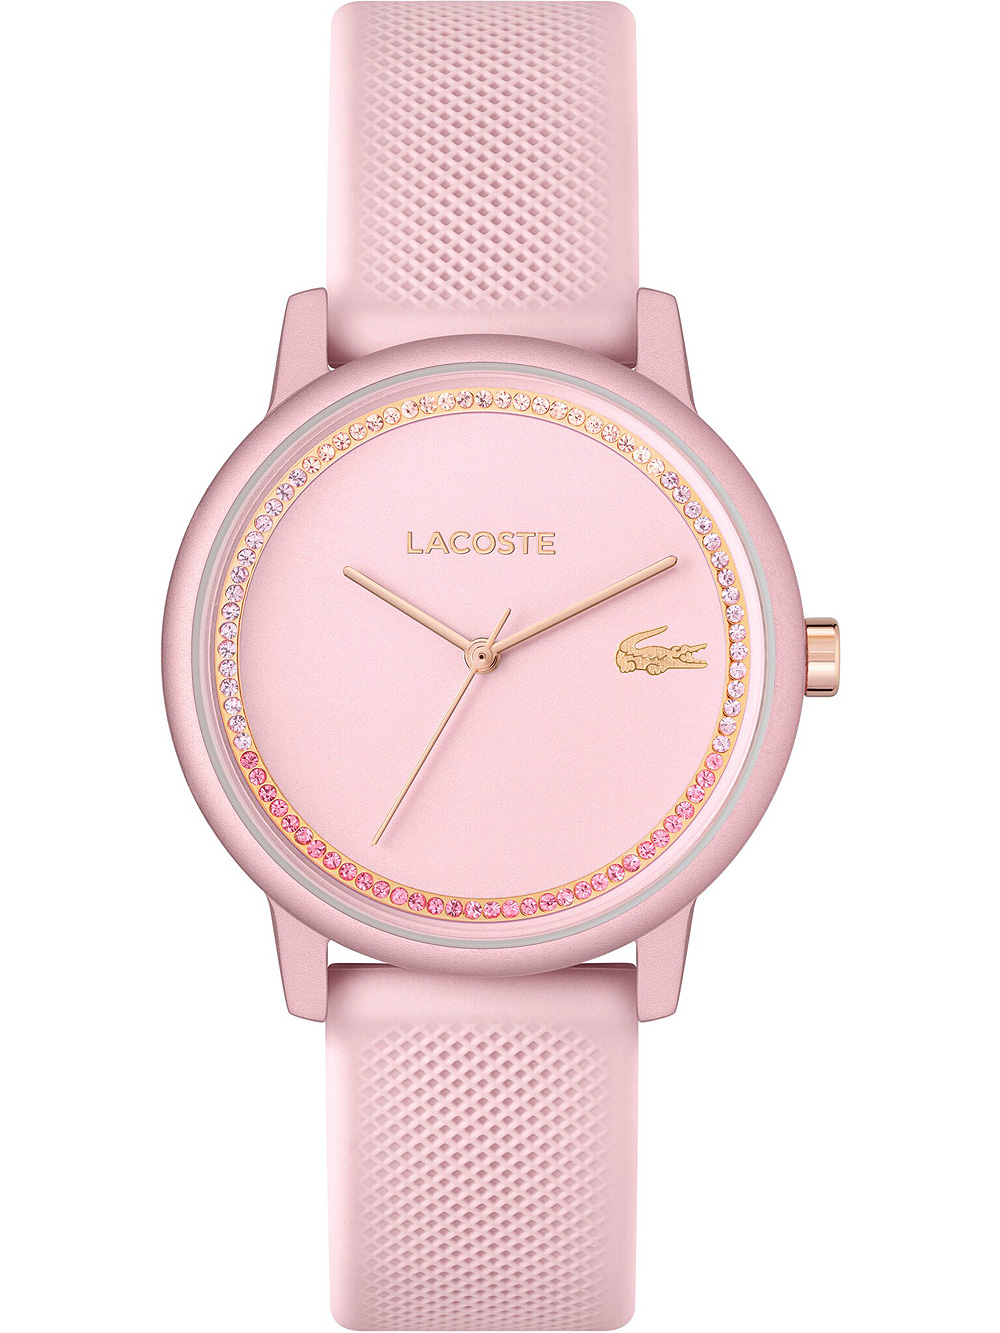 Dámské hodinky Lacoste 2001289 12.12